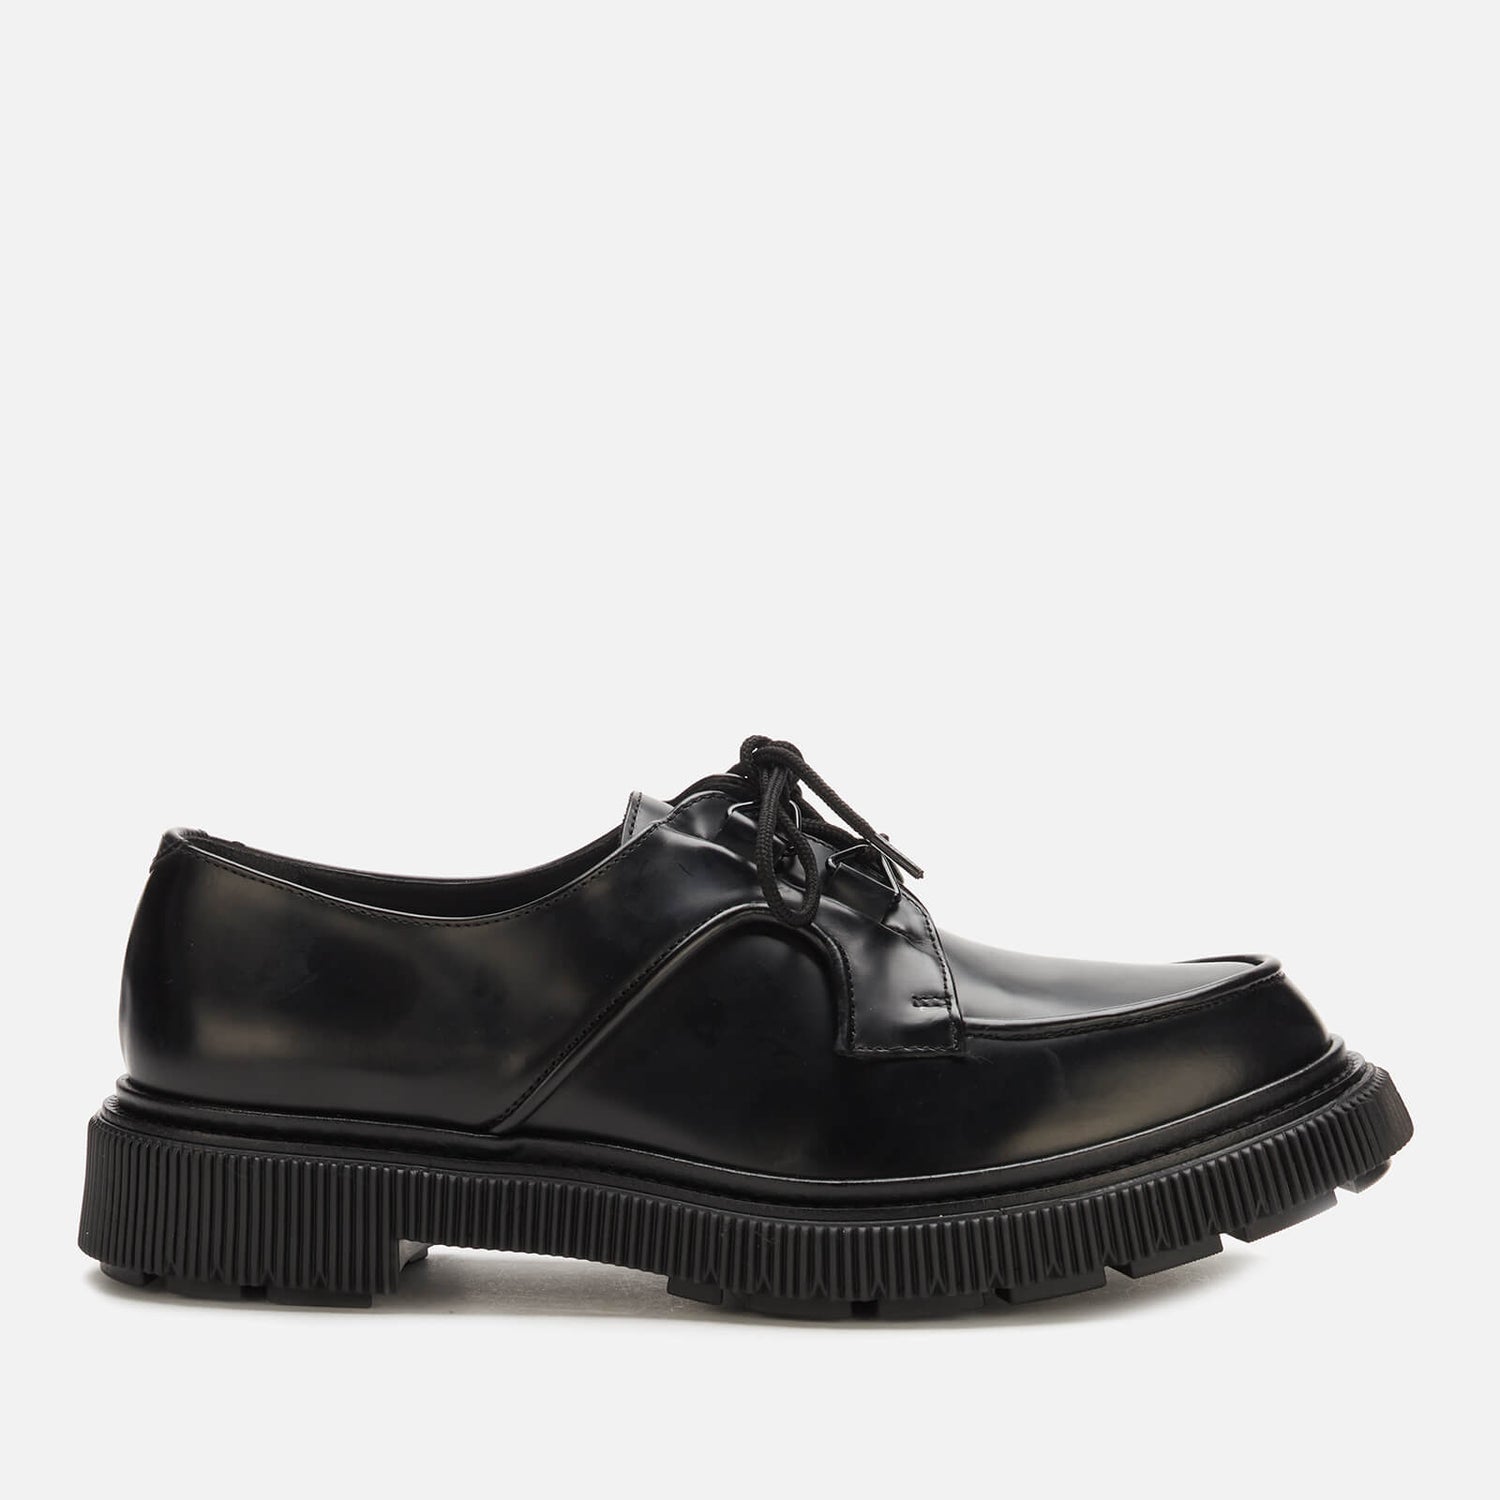 Adieu Men's Type 175 Leather Derby Shoes - Black